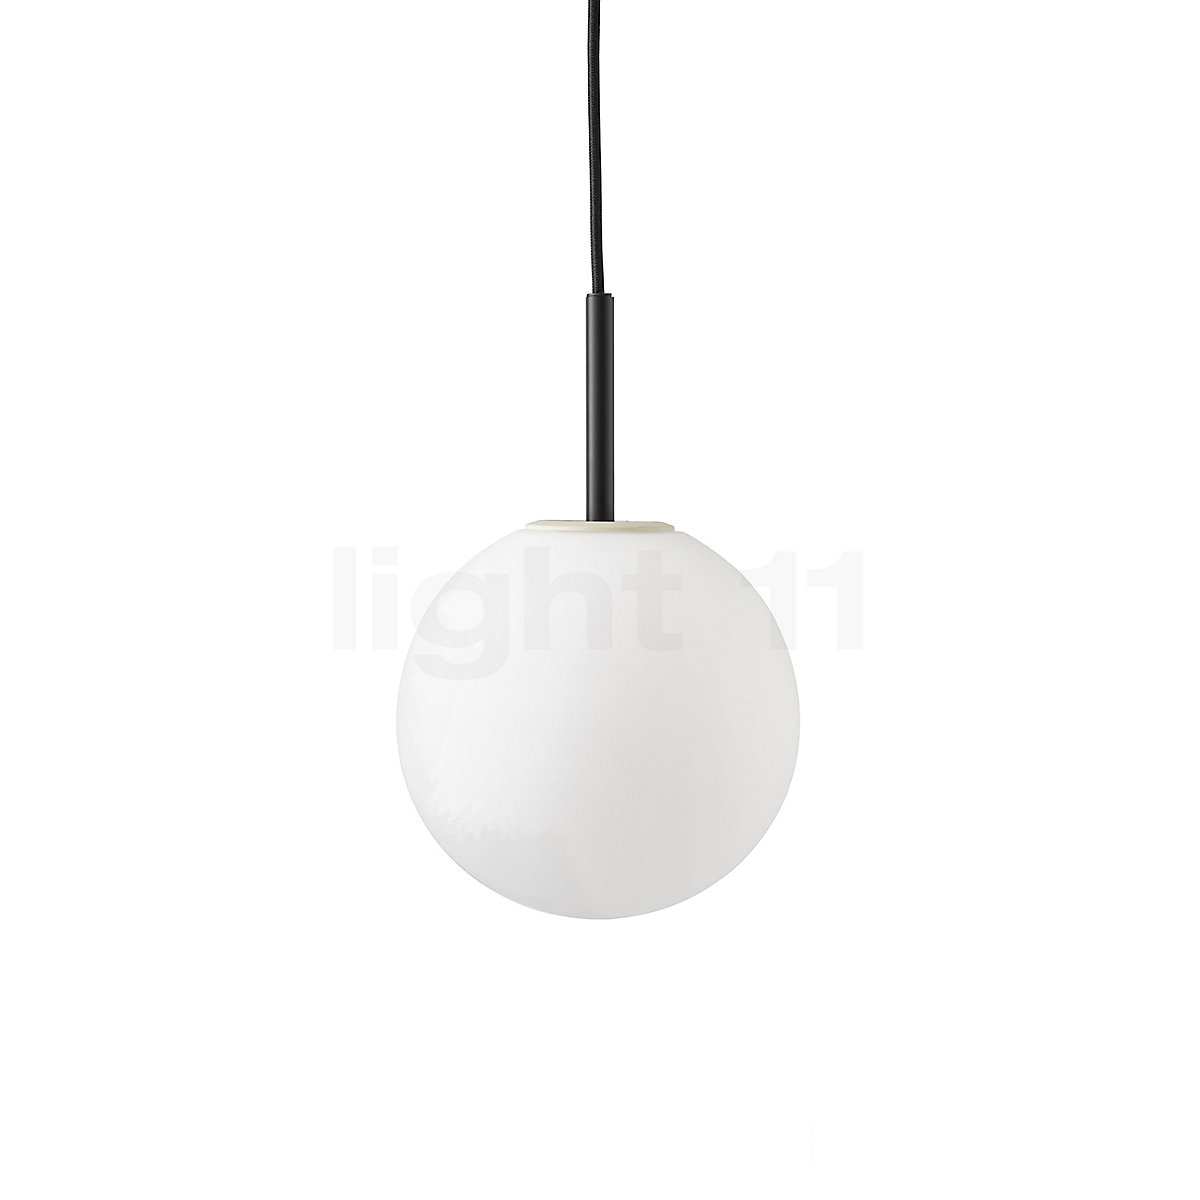 visueel Afwijken auteur Menu TR Bulb Hanglamp kopen bij light11.nl